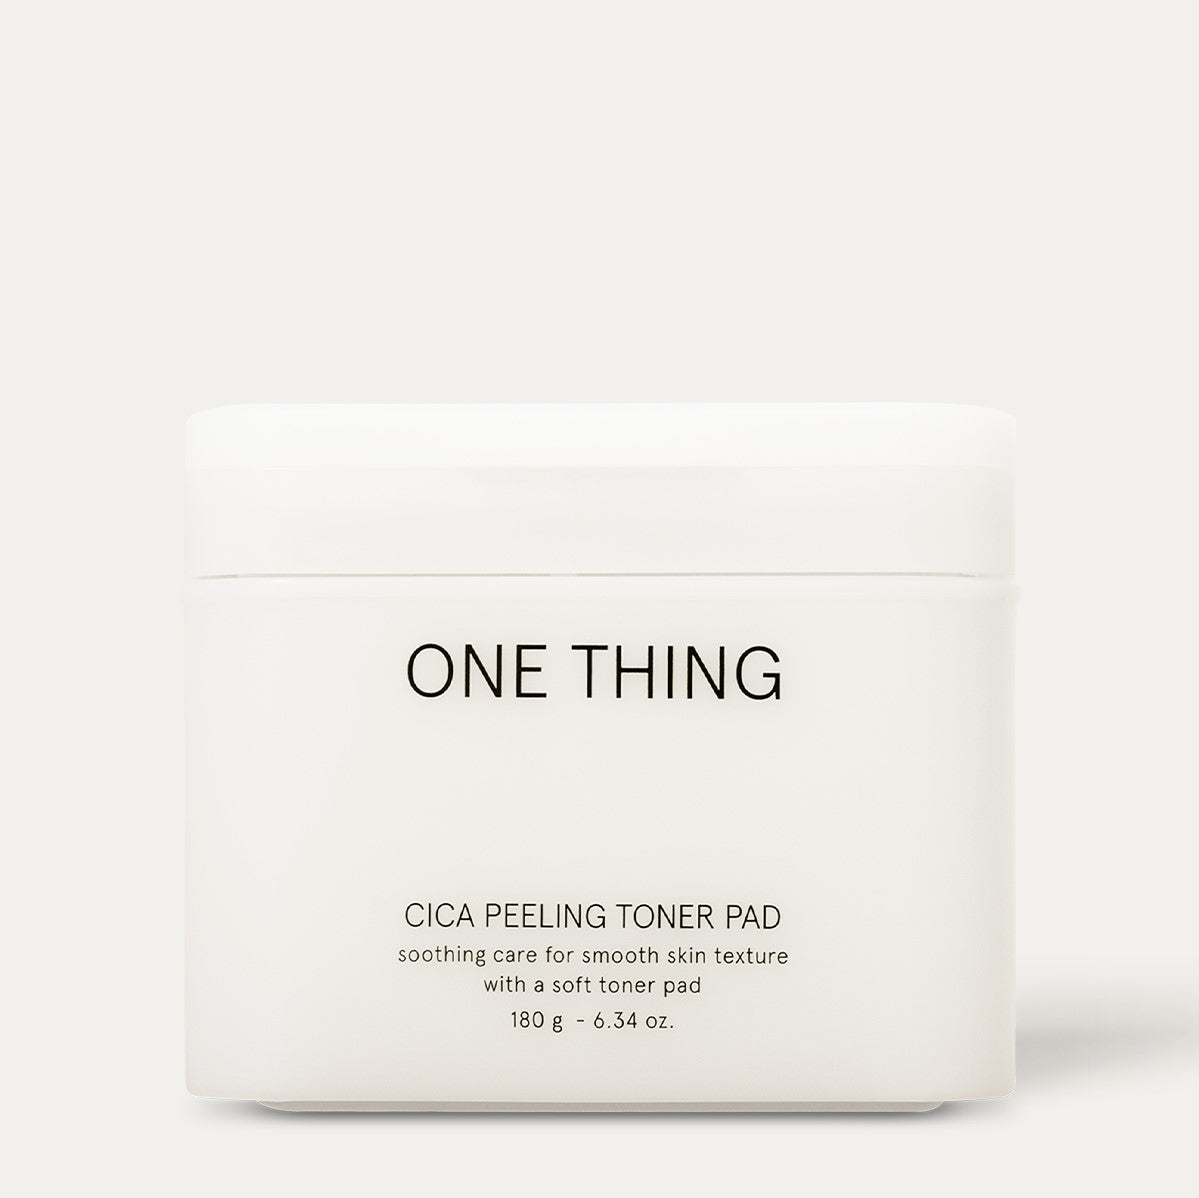 [Onething] Cica Peeling Toner Pad 180g/65pcs - Enrapturecosmetics